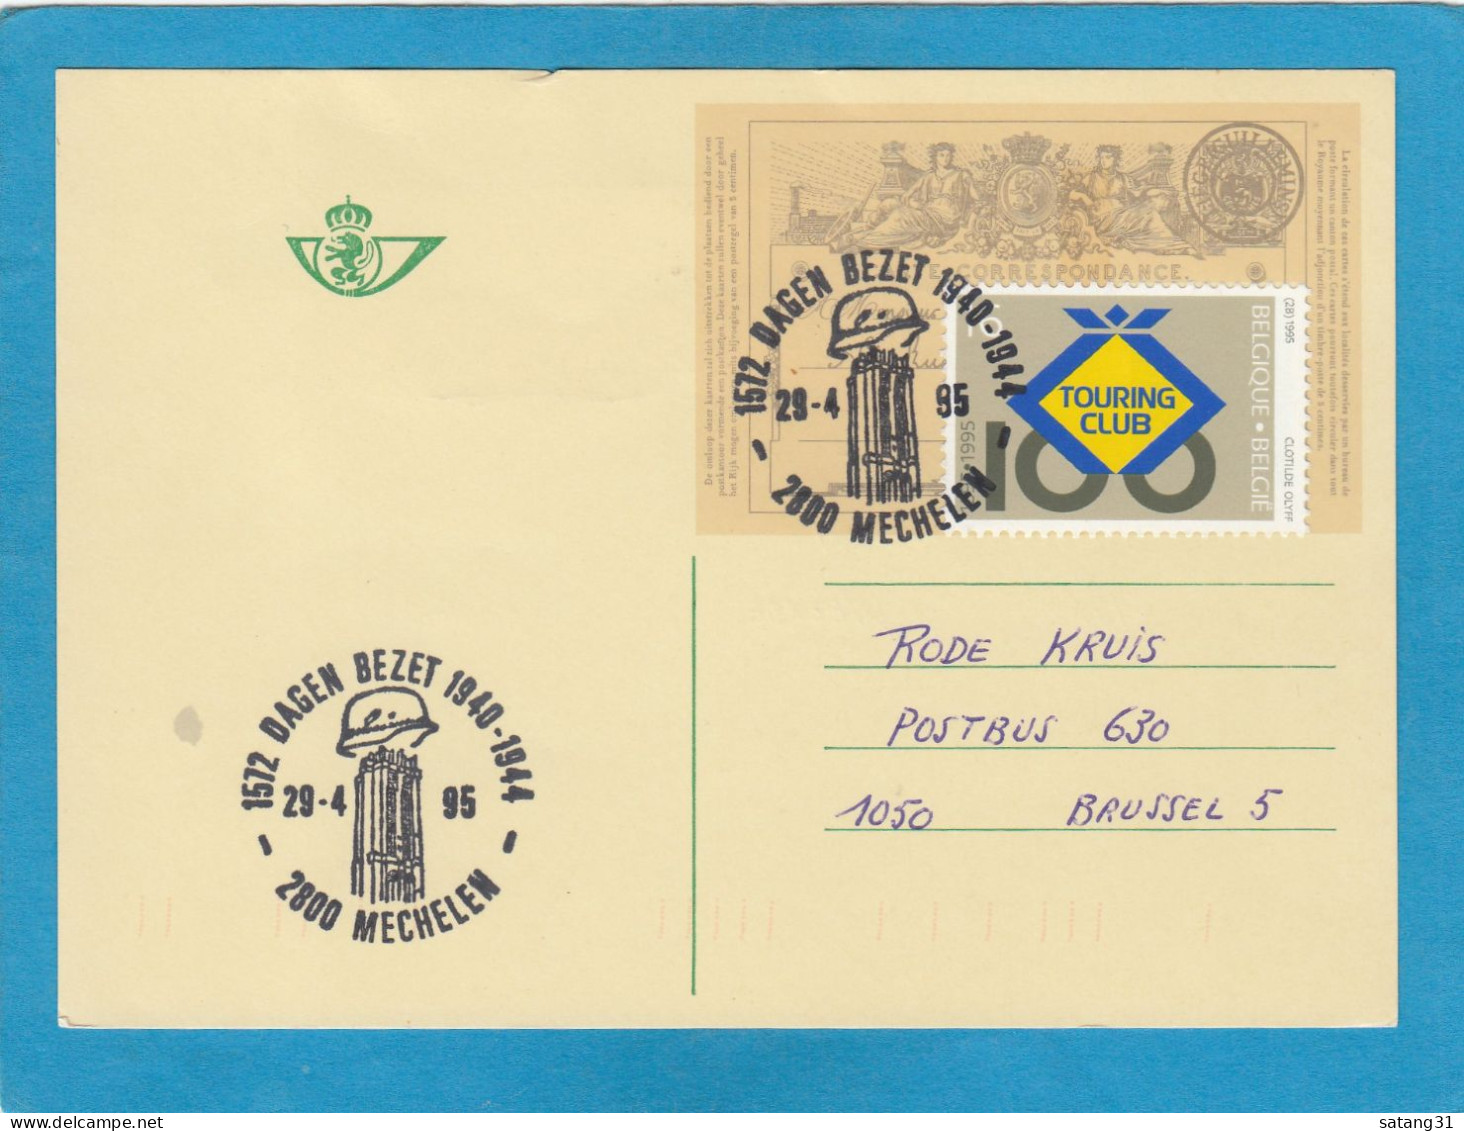 ENTIER POSTAL AVEC TIMBRE "TOURING CLUB" ET CACHET "1572 DAGEN BEZET 1940-1944 MECHELEN 29-4-95". - Briefkaarten 1951-..